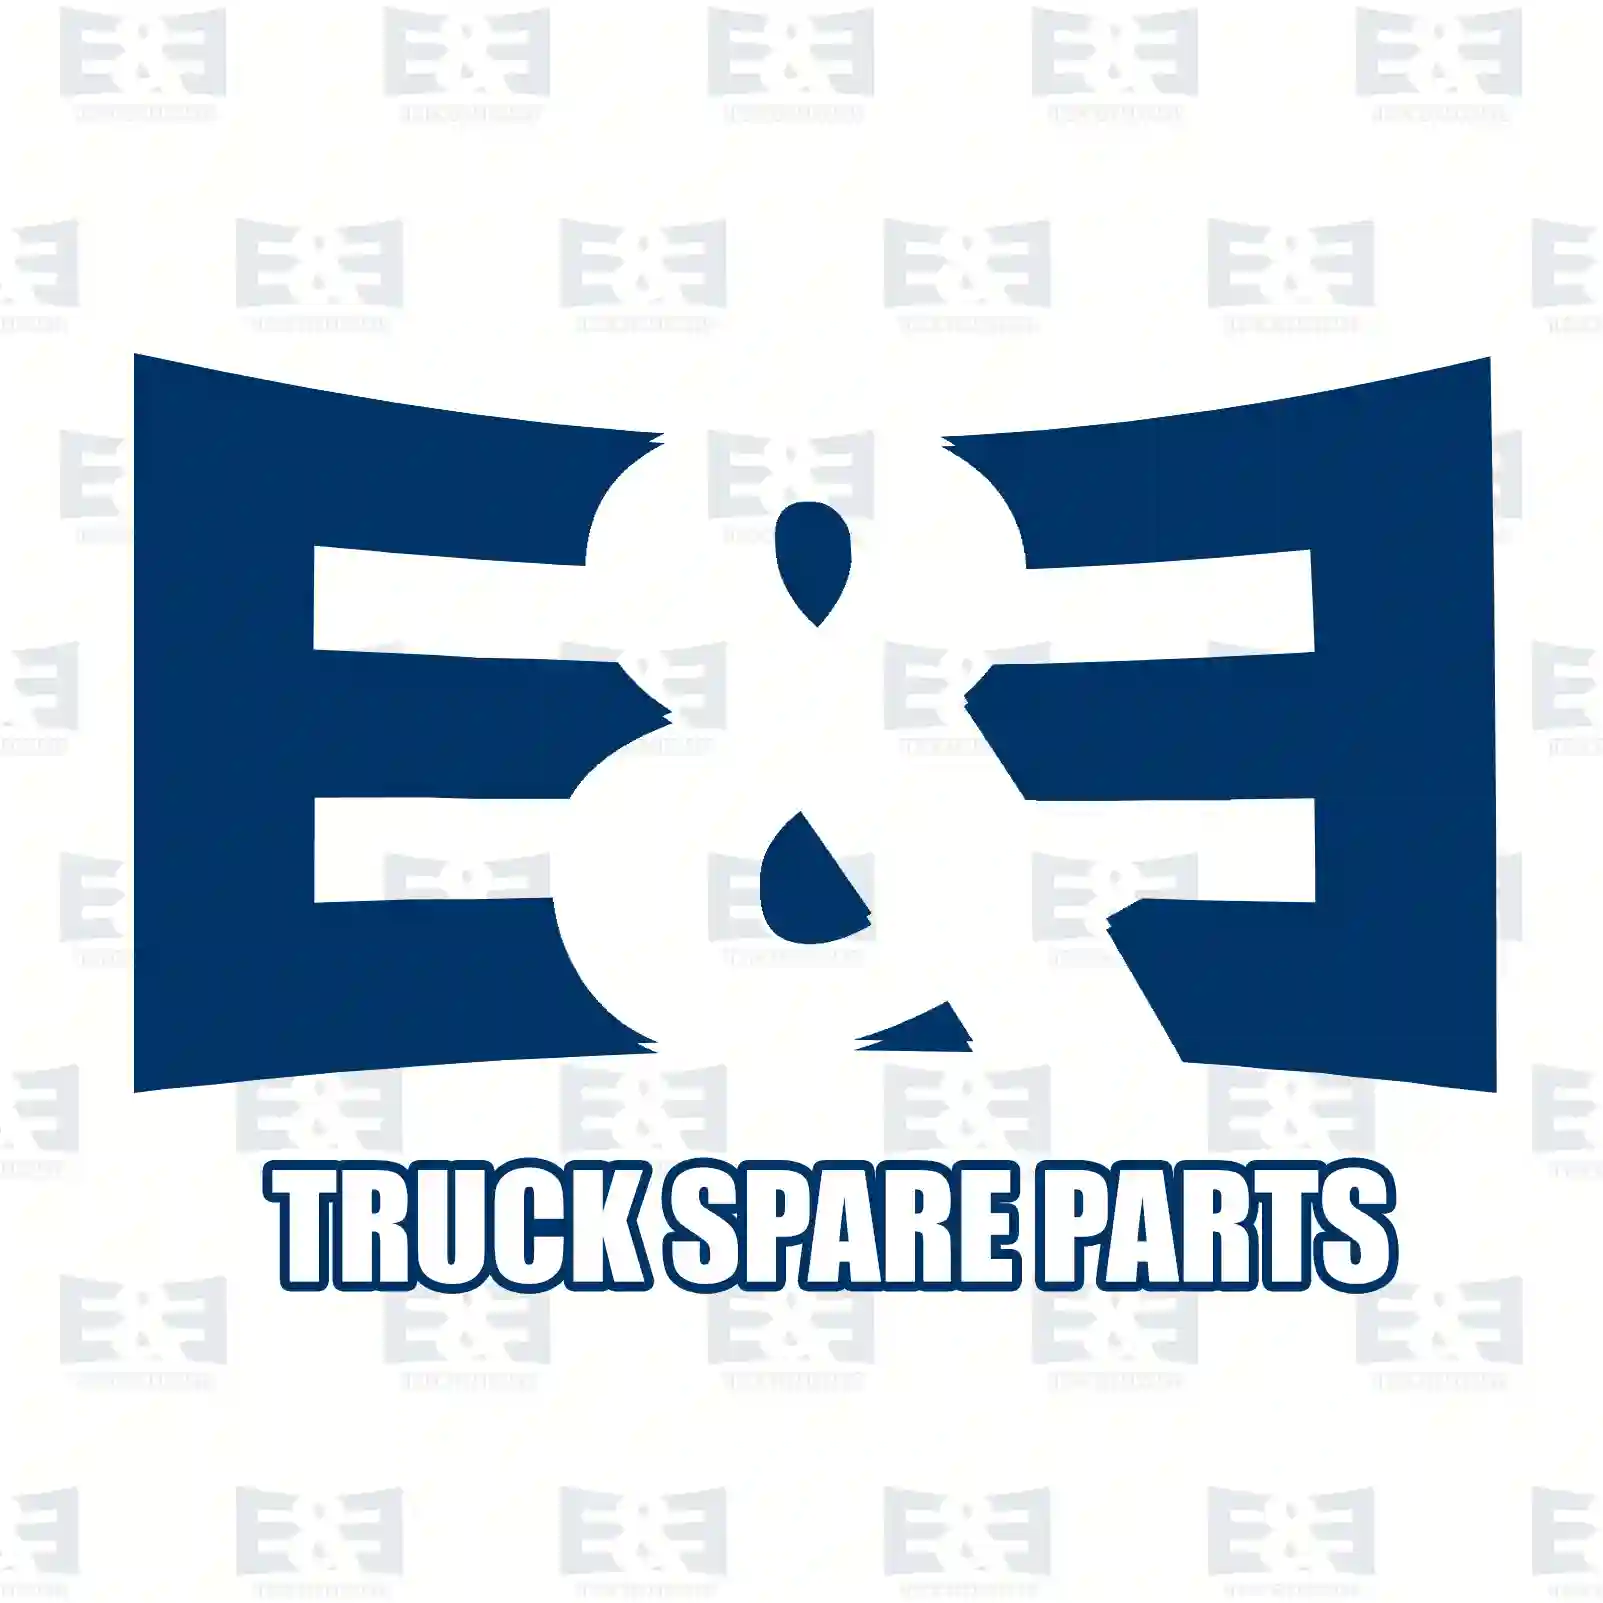 Oil seal, 2E2276067, 1380160, 1393331, 1502384, 502384, ZG02598-0008, , ||  2E2276067 E&E Truck Spare Parts | Truck Spare Parts, Auotomotive Spare Parts Oil seal, 2E2276067, 1380160, 1393331, 1502384, 502384, ZG02598-0008, , ||  2E2276067 E&E Truck Spare Parts | Truck Spare Parts, Auotomotive Spare Parts